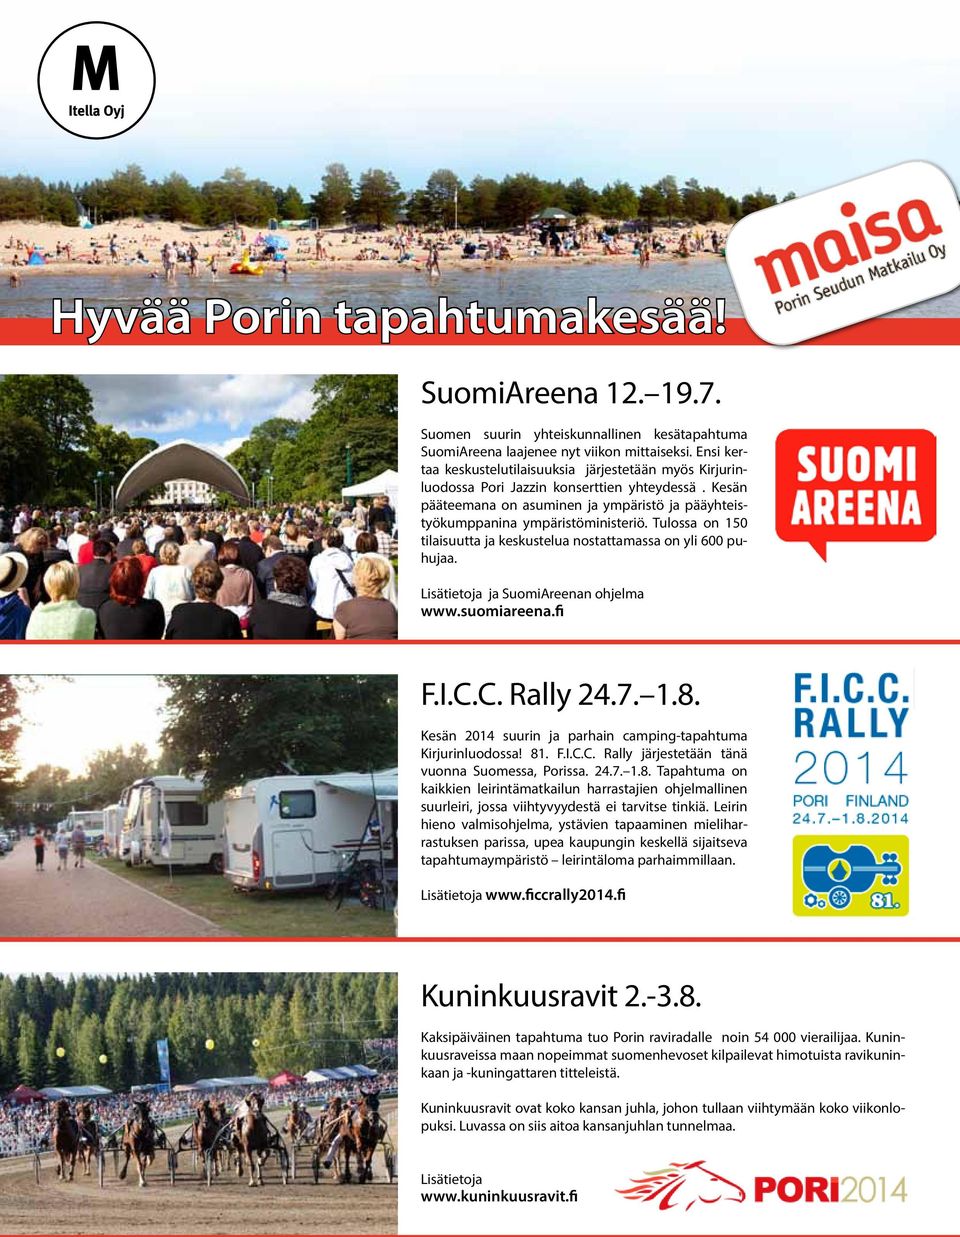 Tulossa on 150 tilaisuutta ja keskustelua nostattamassa on yli 600 puhujaa. Lisätietoja ja SuomiAreenan ohjelma www.suomiareena.fi F.I.C.C. Rally 24.7. 1.8.